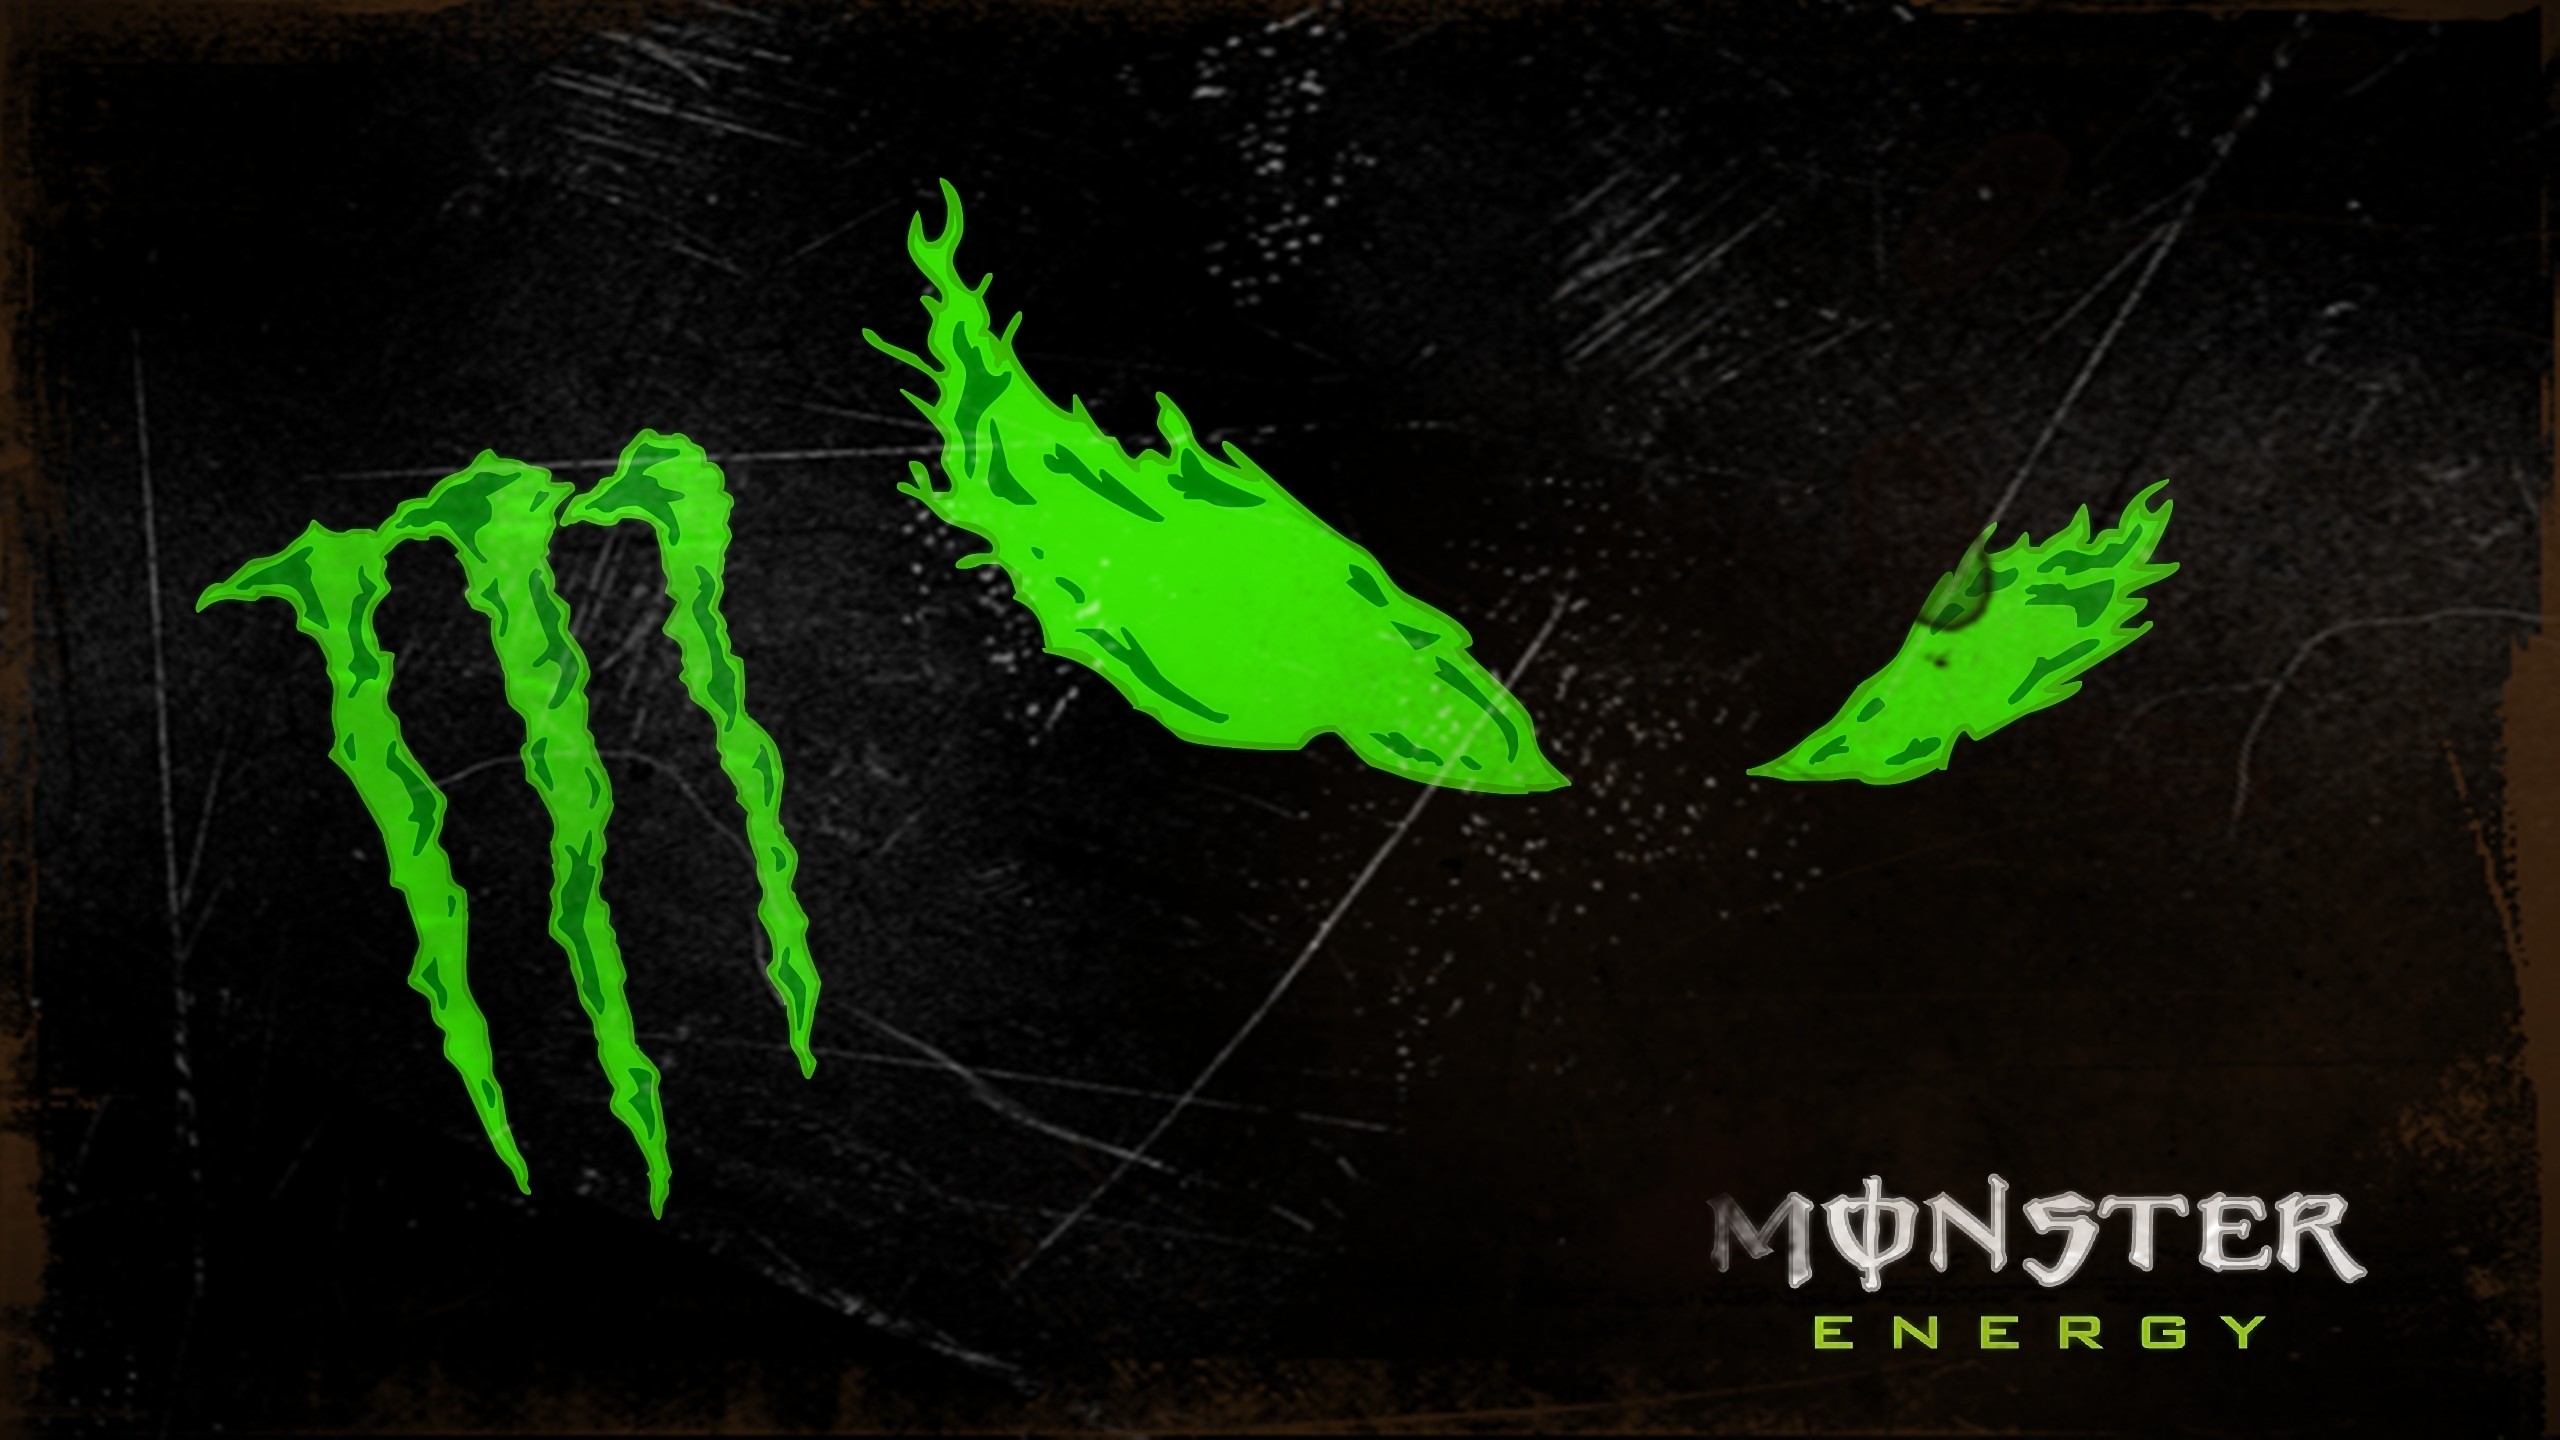 2560x1440 Monster Energy wallpaper